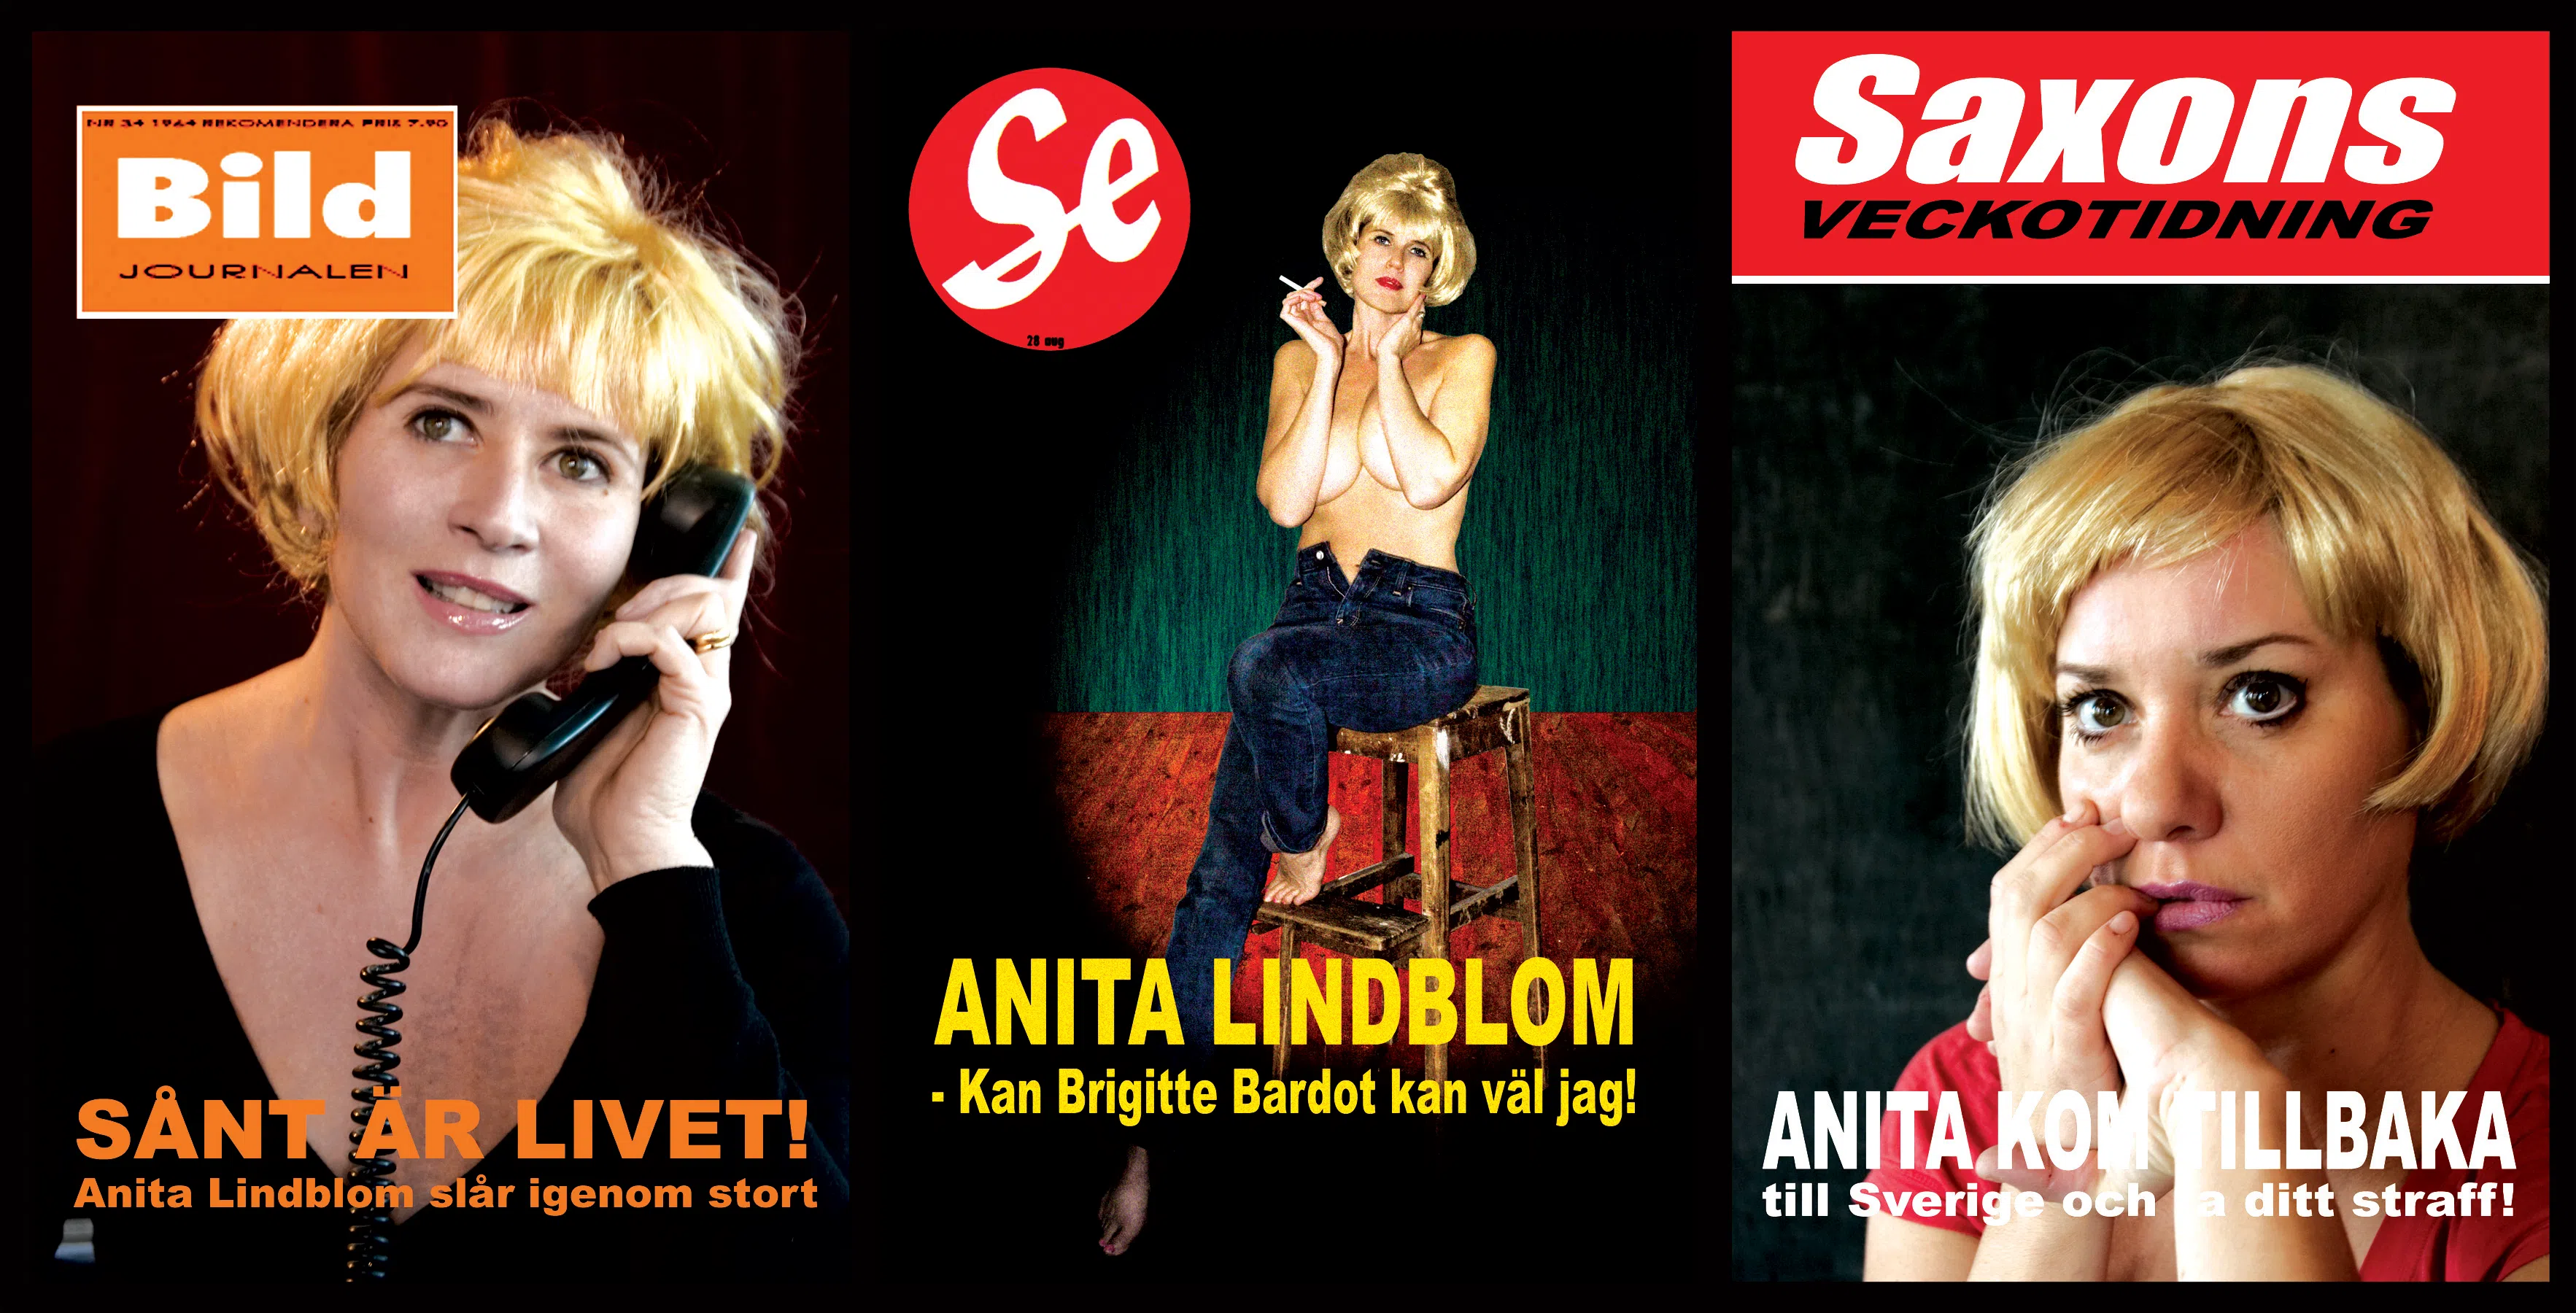 Gabriella Lockwall, Sofia Lockwall och Malena Jönsson som Anita Lindblom på olika tidningsomslag.